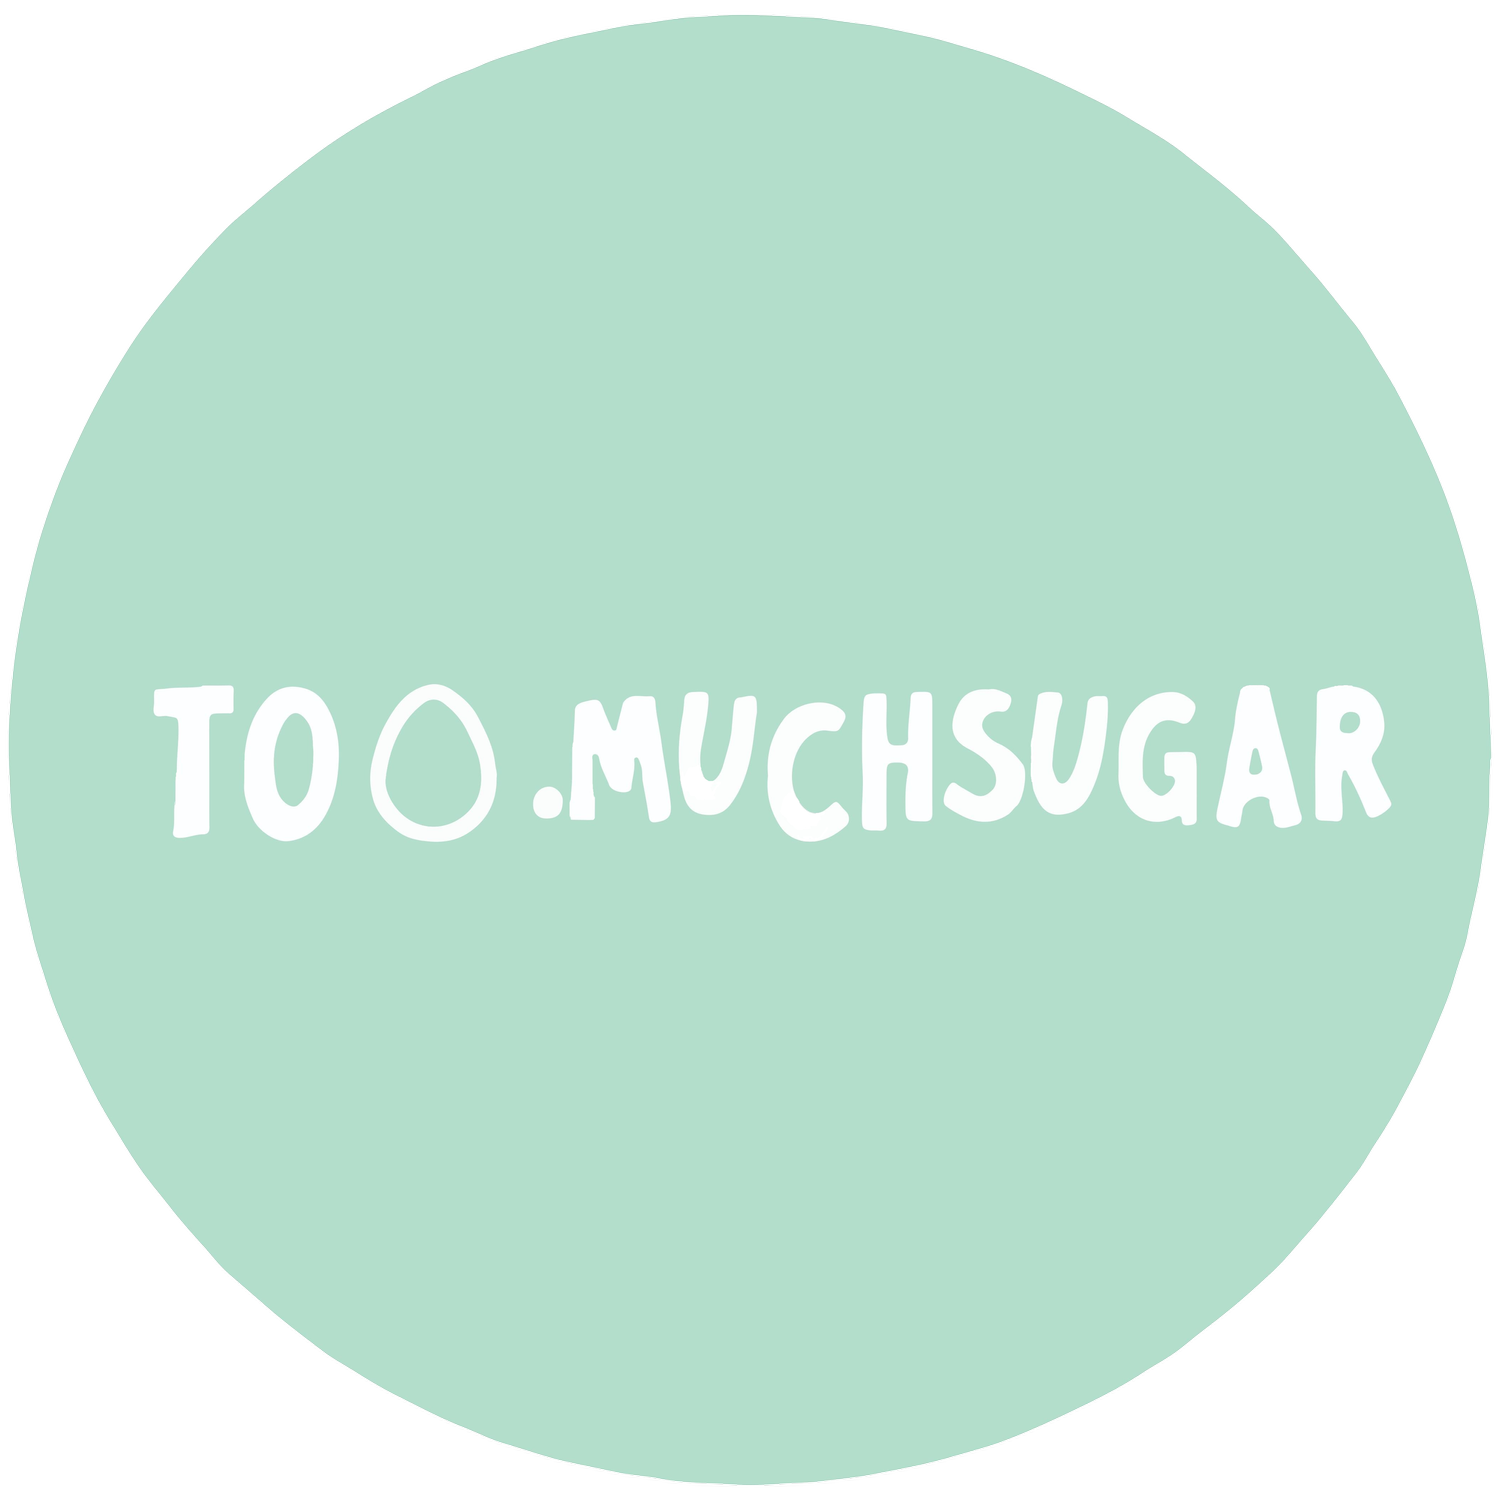 too.muchsugar